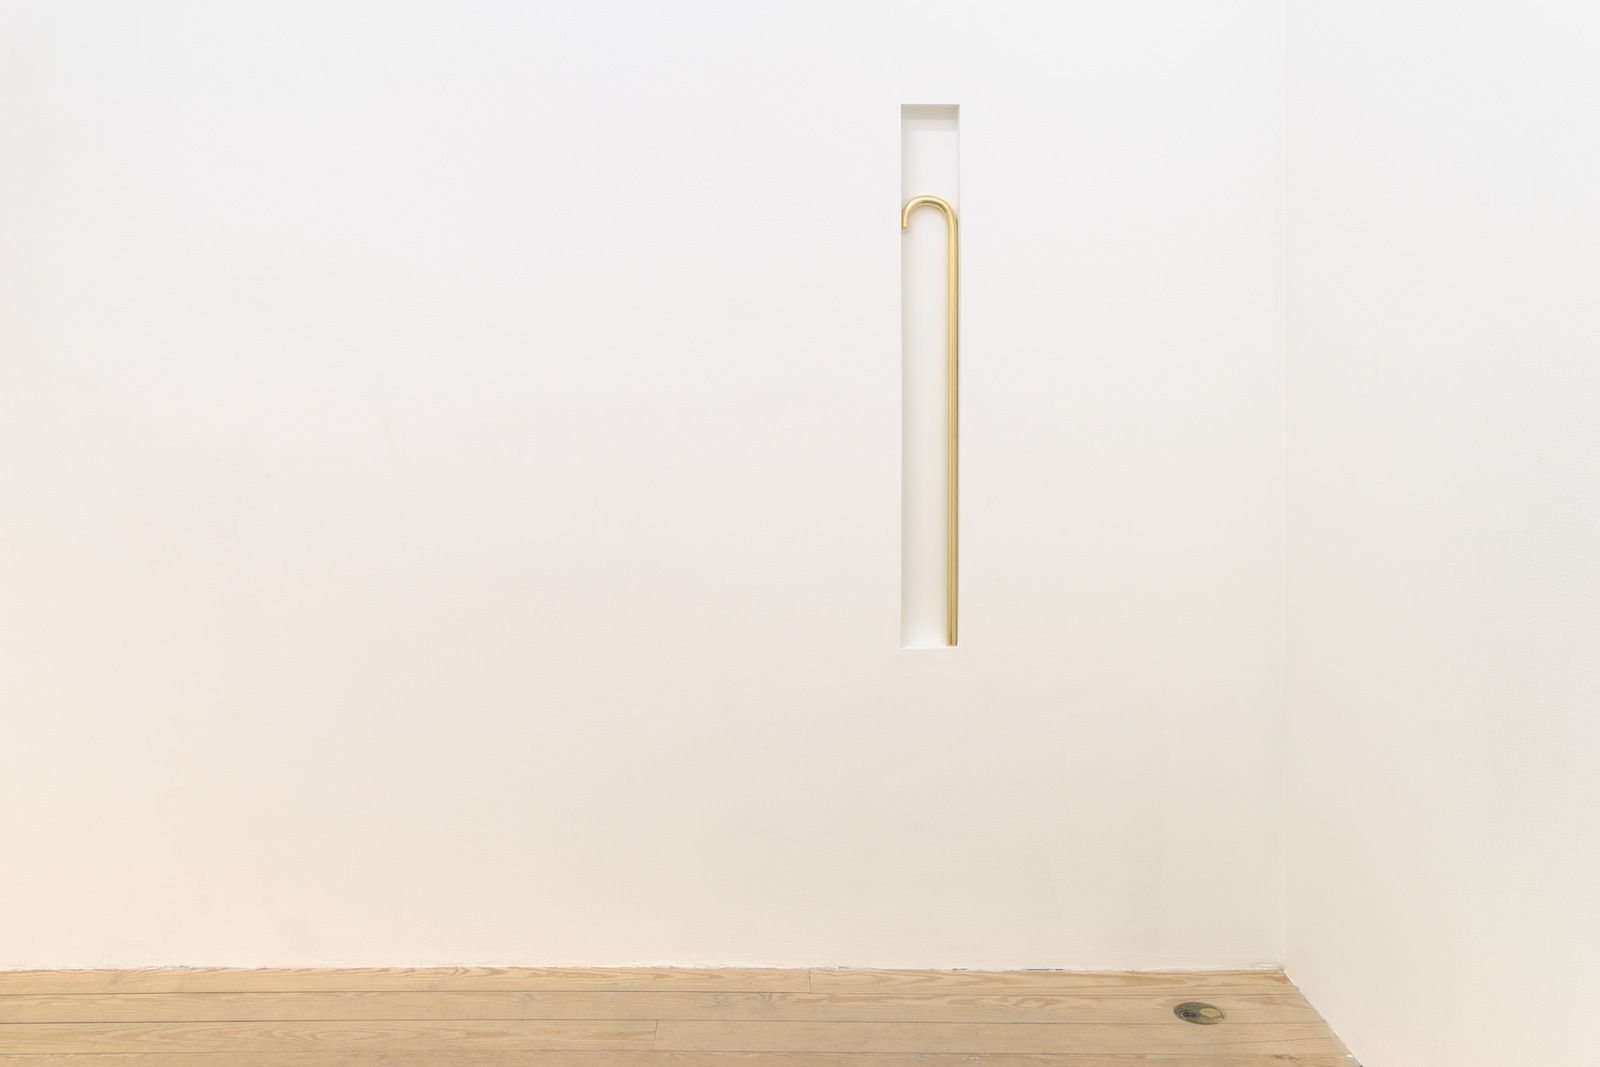 Stephen Lichty, Cane, 2013, bronze, 26 × 5 in.